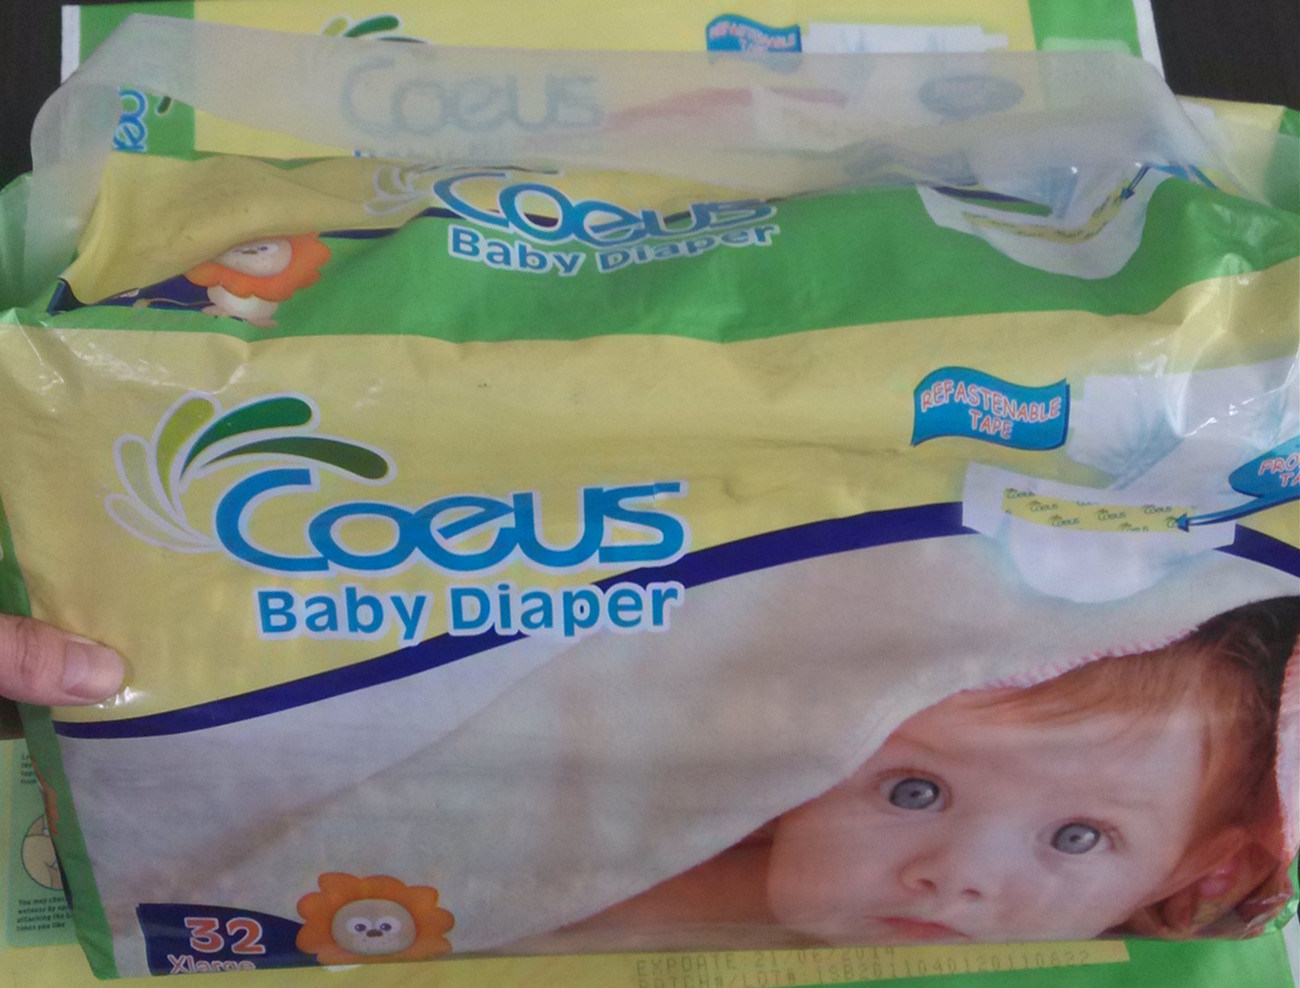 Coeus Baby Diaper